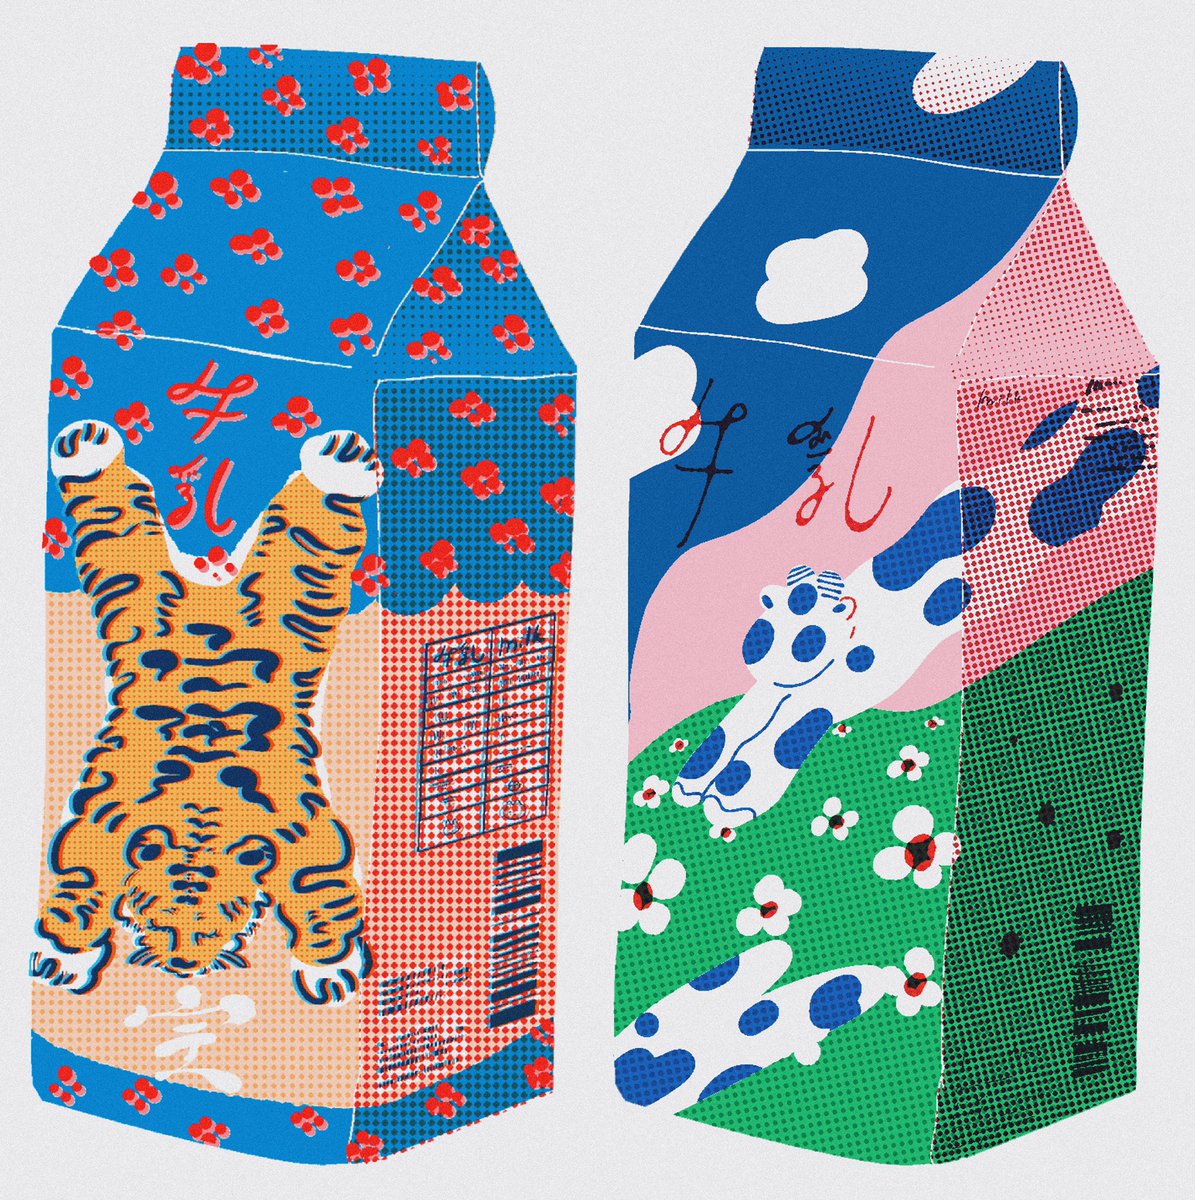 「イラストの牛乳パックととホンモノの牛乳パック」|HOHOEMIのイラスト